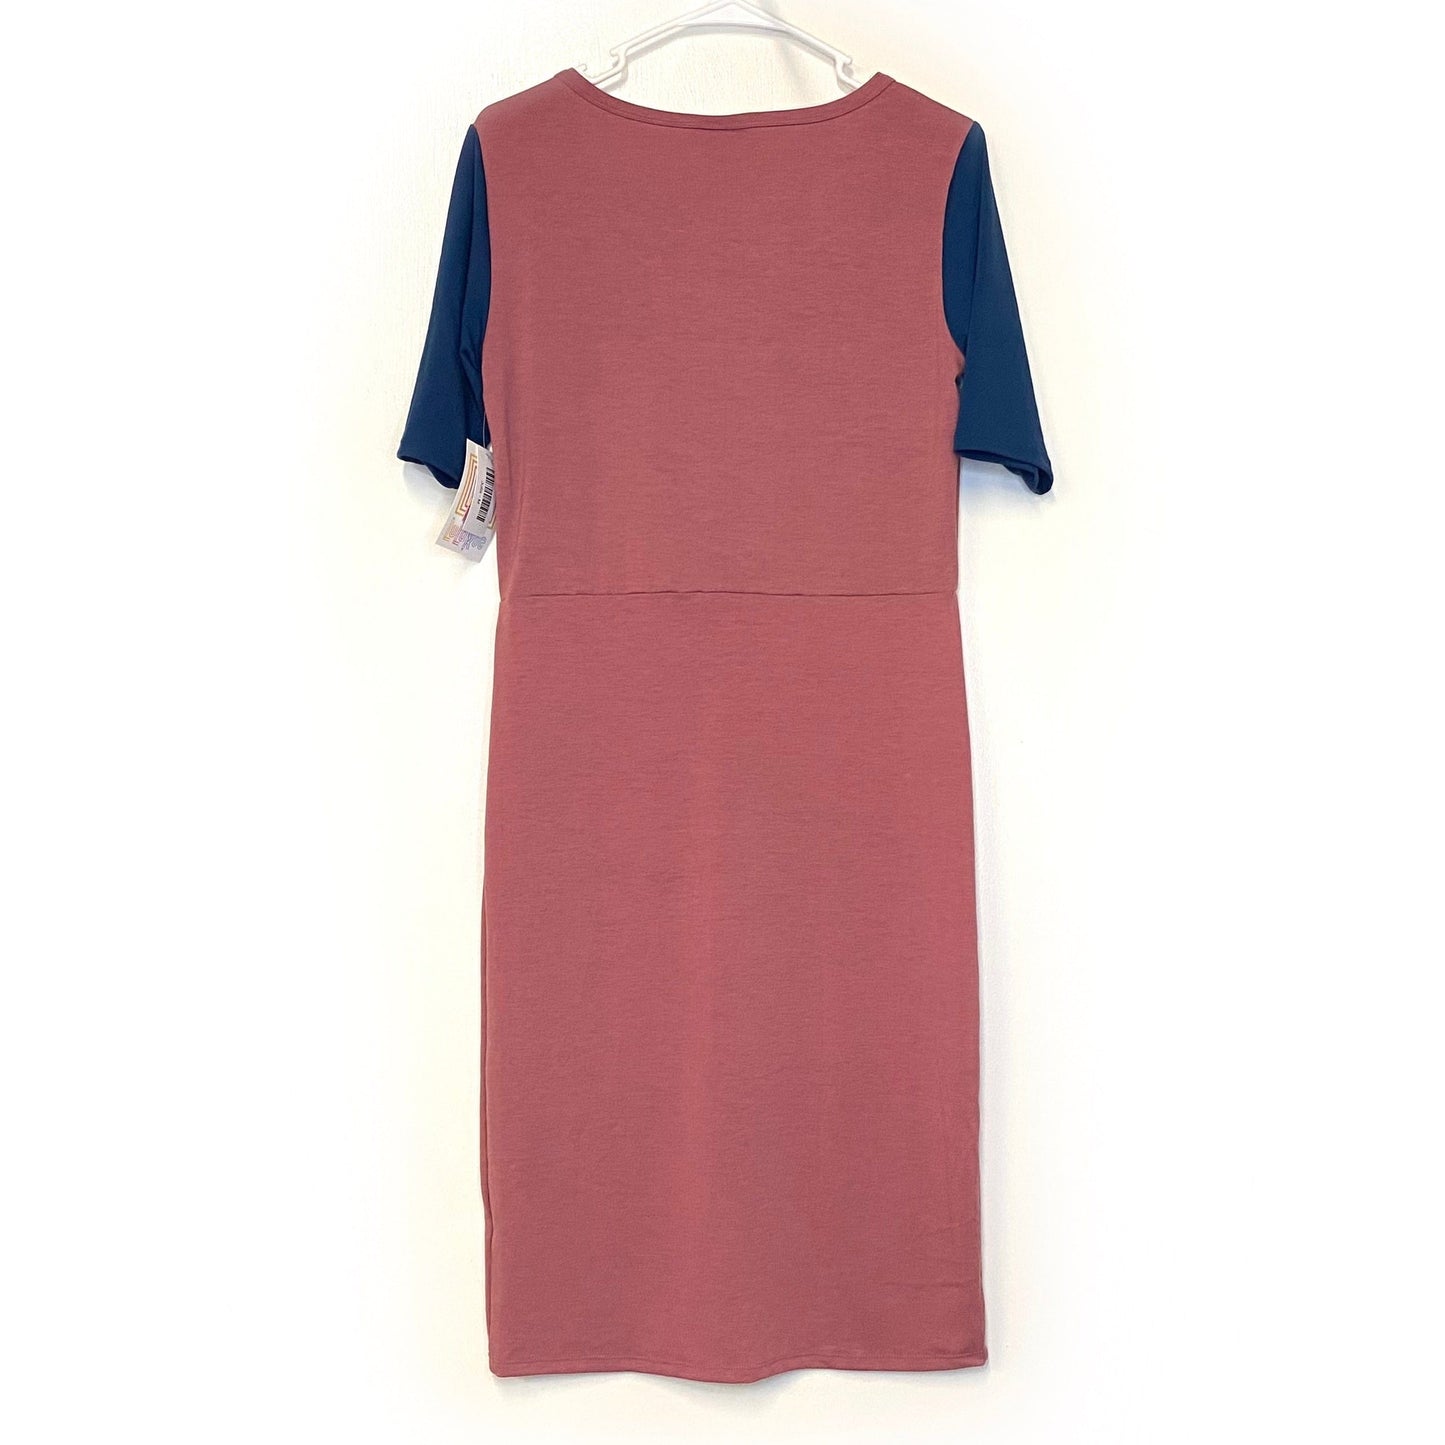 LuLaRoe Womens M Blue/Rouge Pink Julia Dress Scoop Neck ½ Sleeves NWT